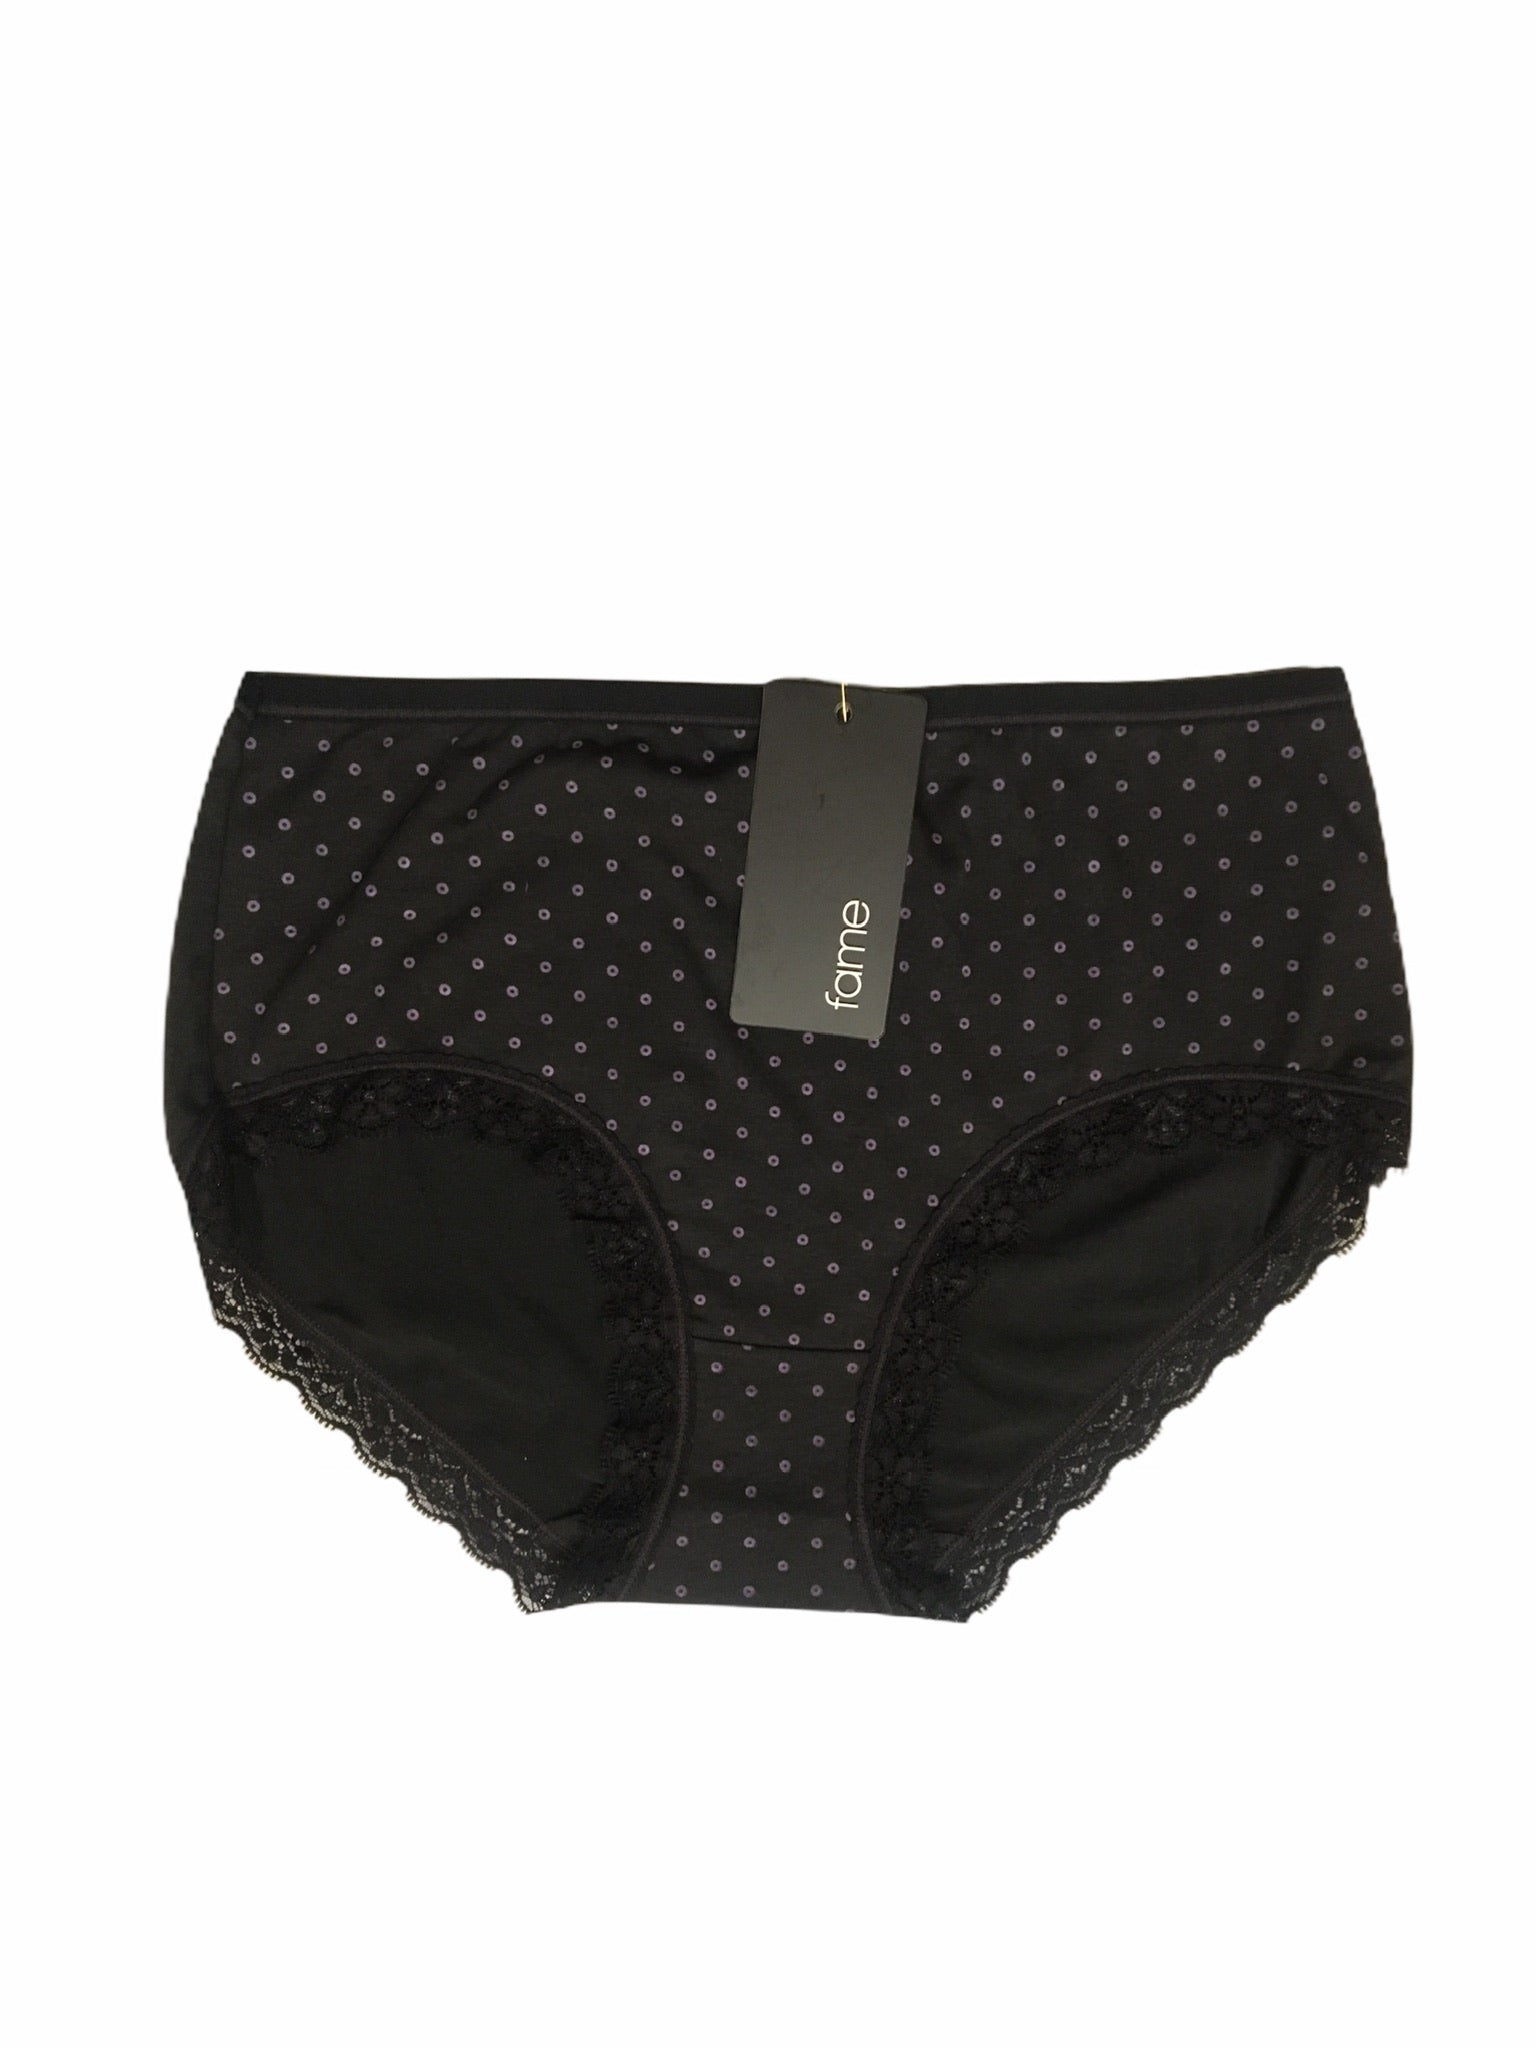 Ladies 6 Pack Size 18-26 Tradie Cotton Underwear Briefs Black Focus (SB3)